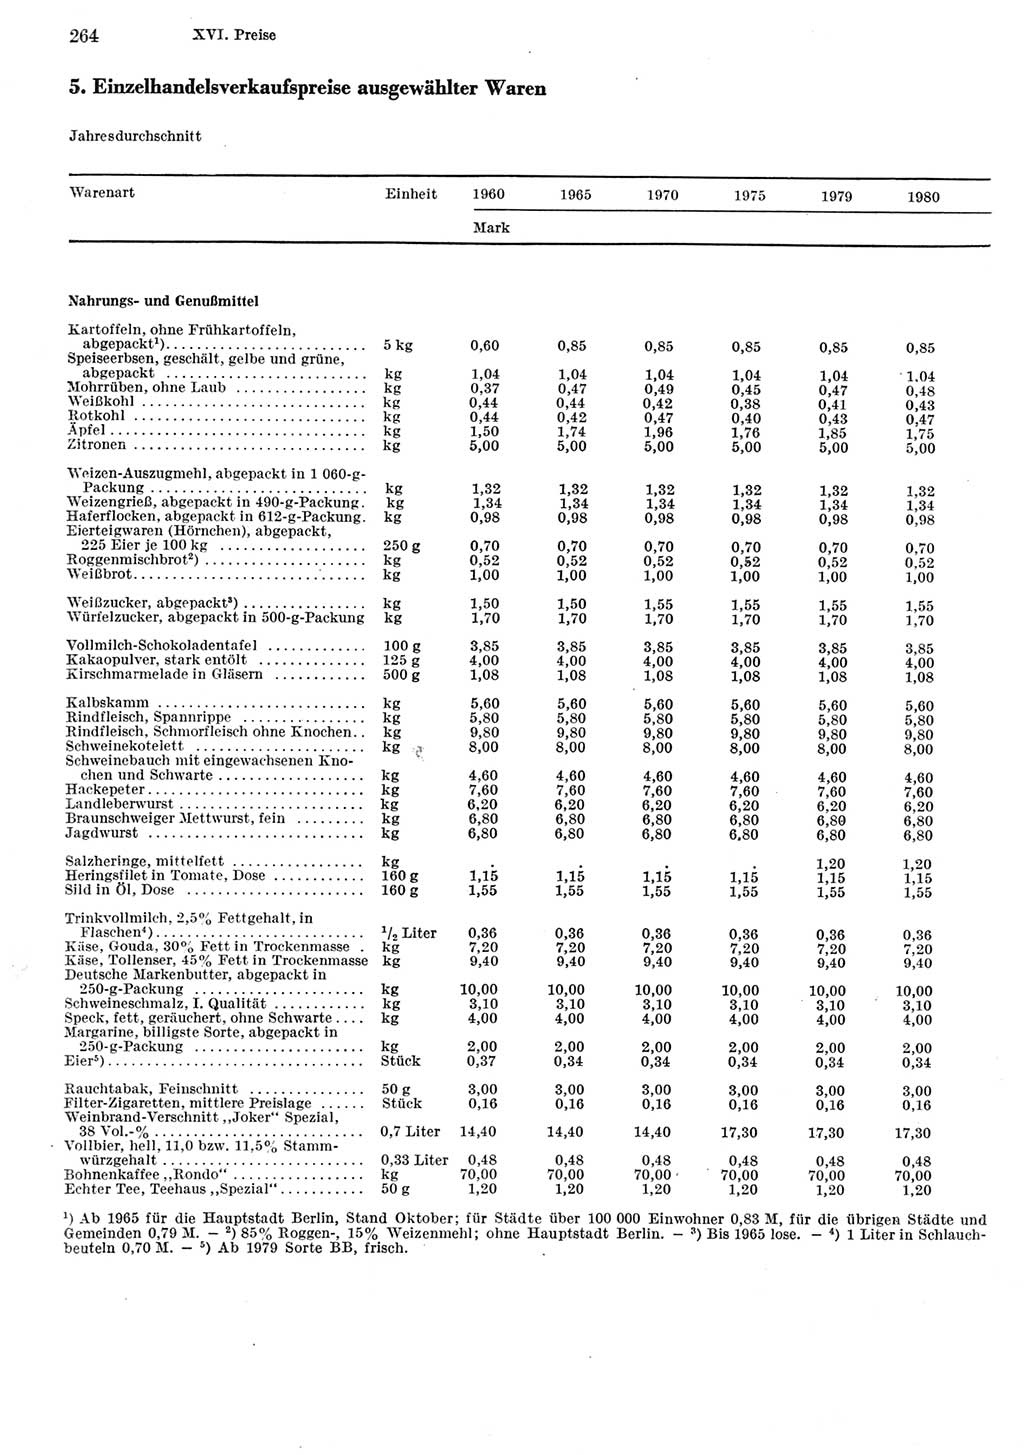 Statistisches Jahrbuch der Deutschen Demokratischen Republik (DDR) 1981, Seite 264 (Stat. Jb. DDR 1981, S. 264)